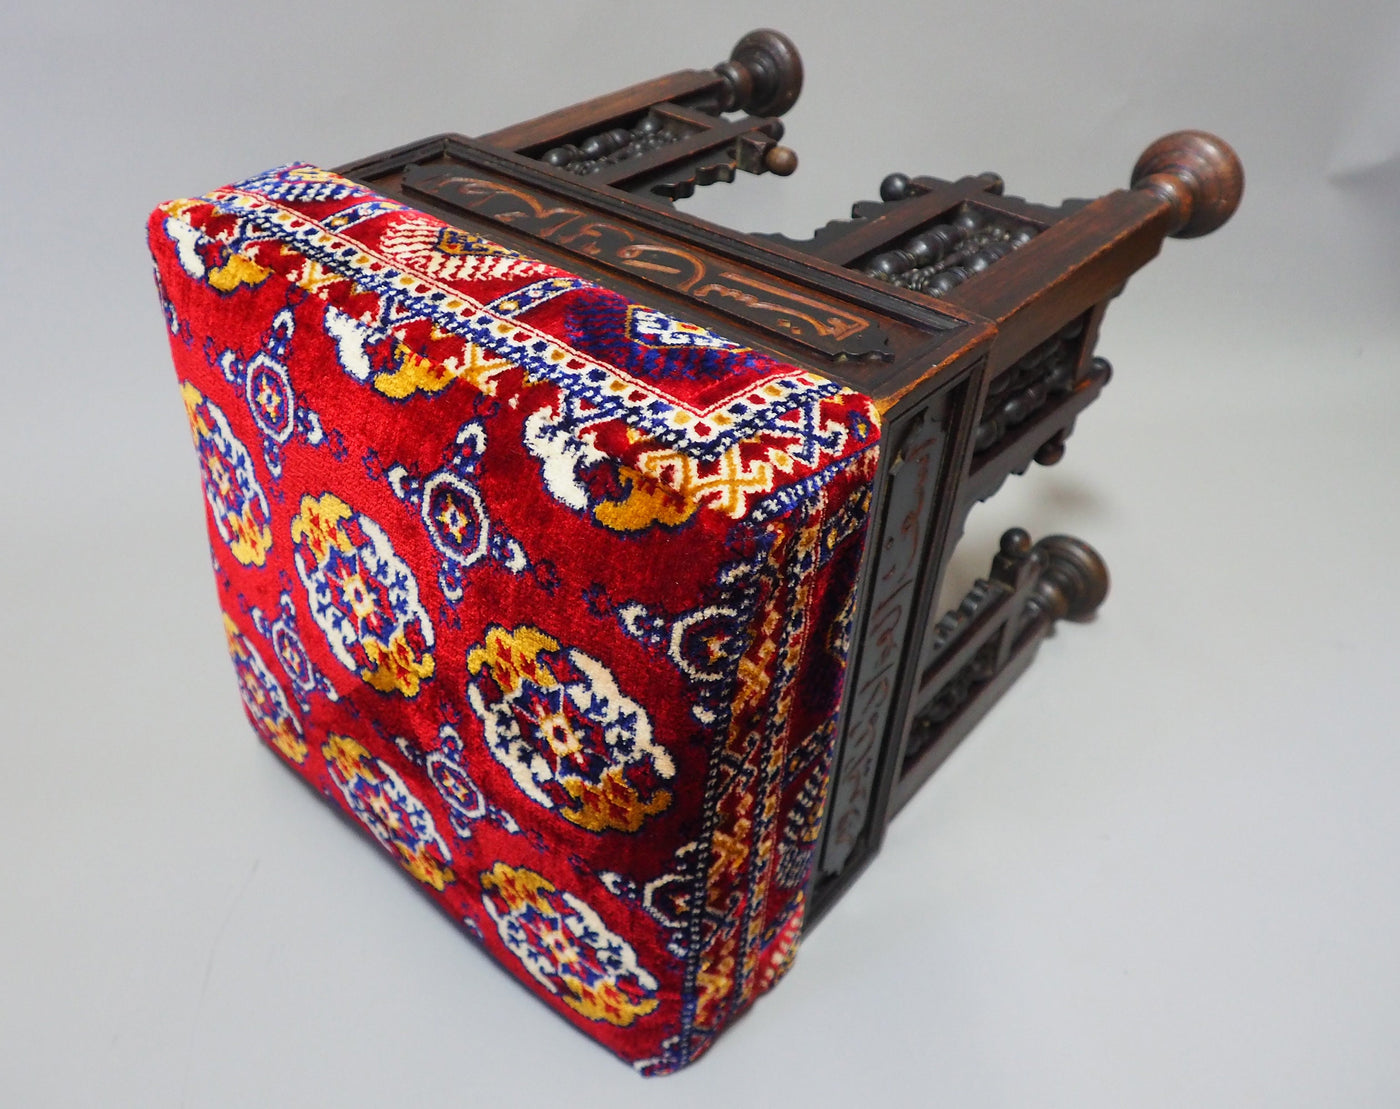 Antik orient islamische Stuhl  Hocker aus Walnussholz und samtweichen Teppich  Damaskus Syrien maurische Kunst mit  Arabische Schrift  Orientsbazar   